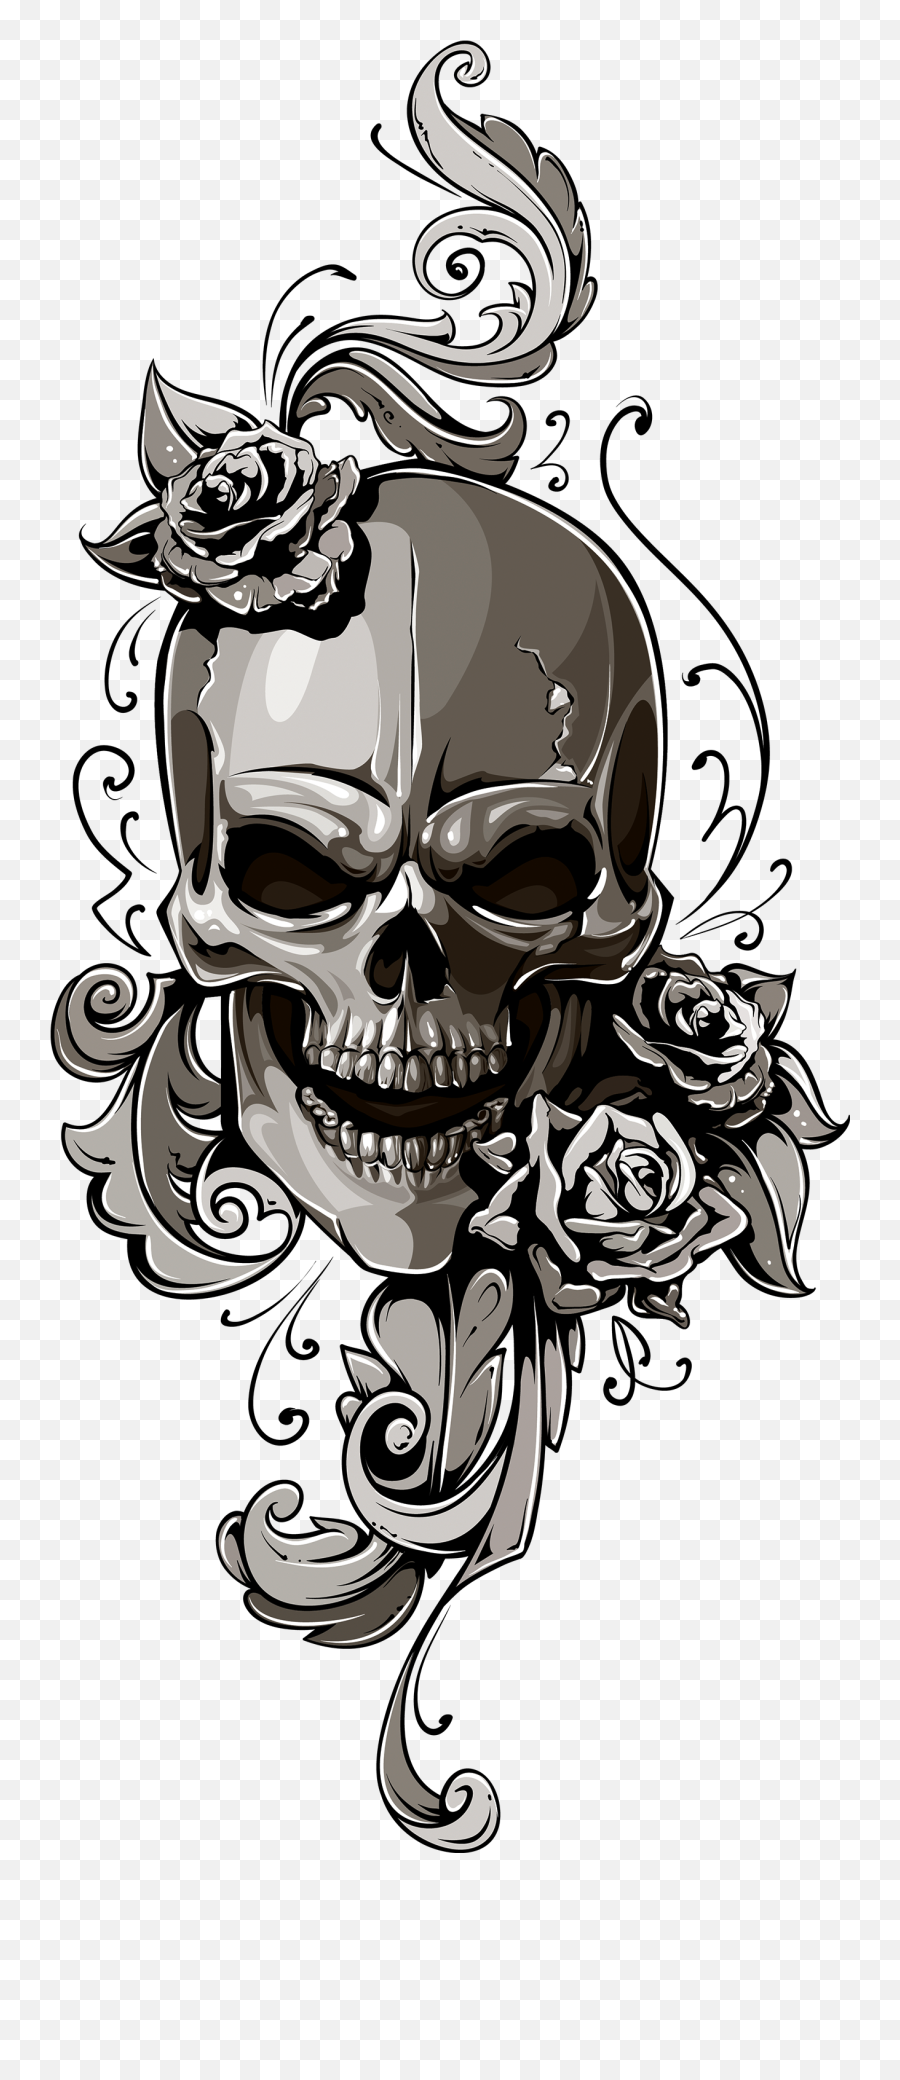 Download School Old Skull - Old School Skull Design Png,Skull Tattoo Png